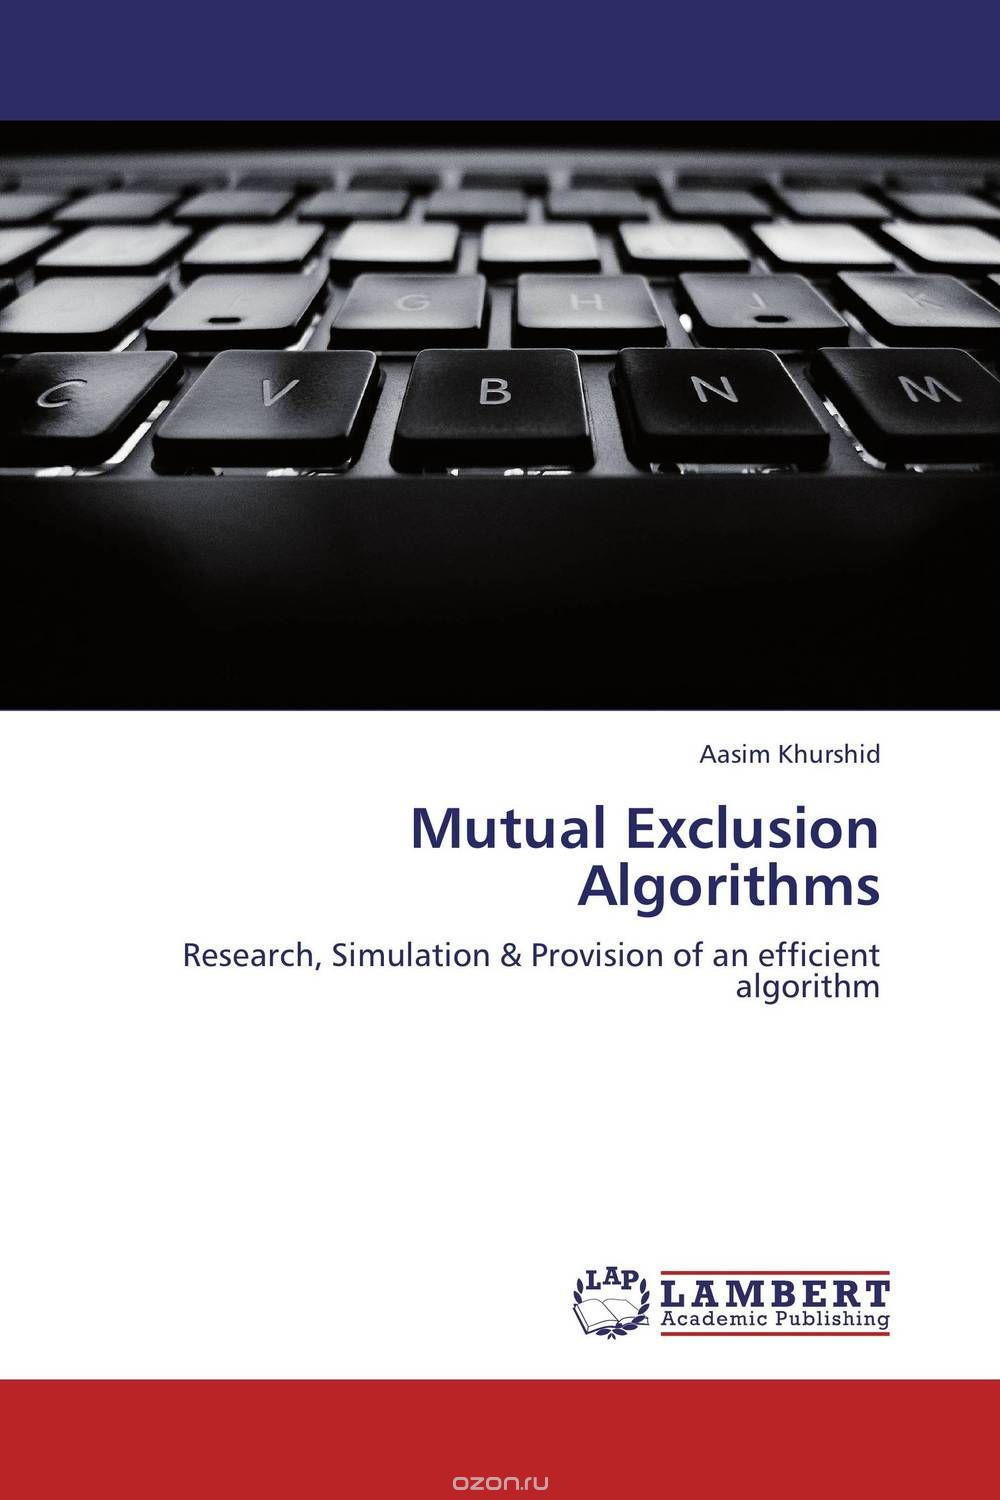 Скачать книгу "Mutual Exclusion Algorithms"